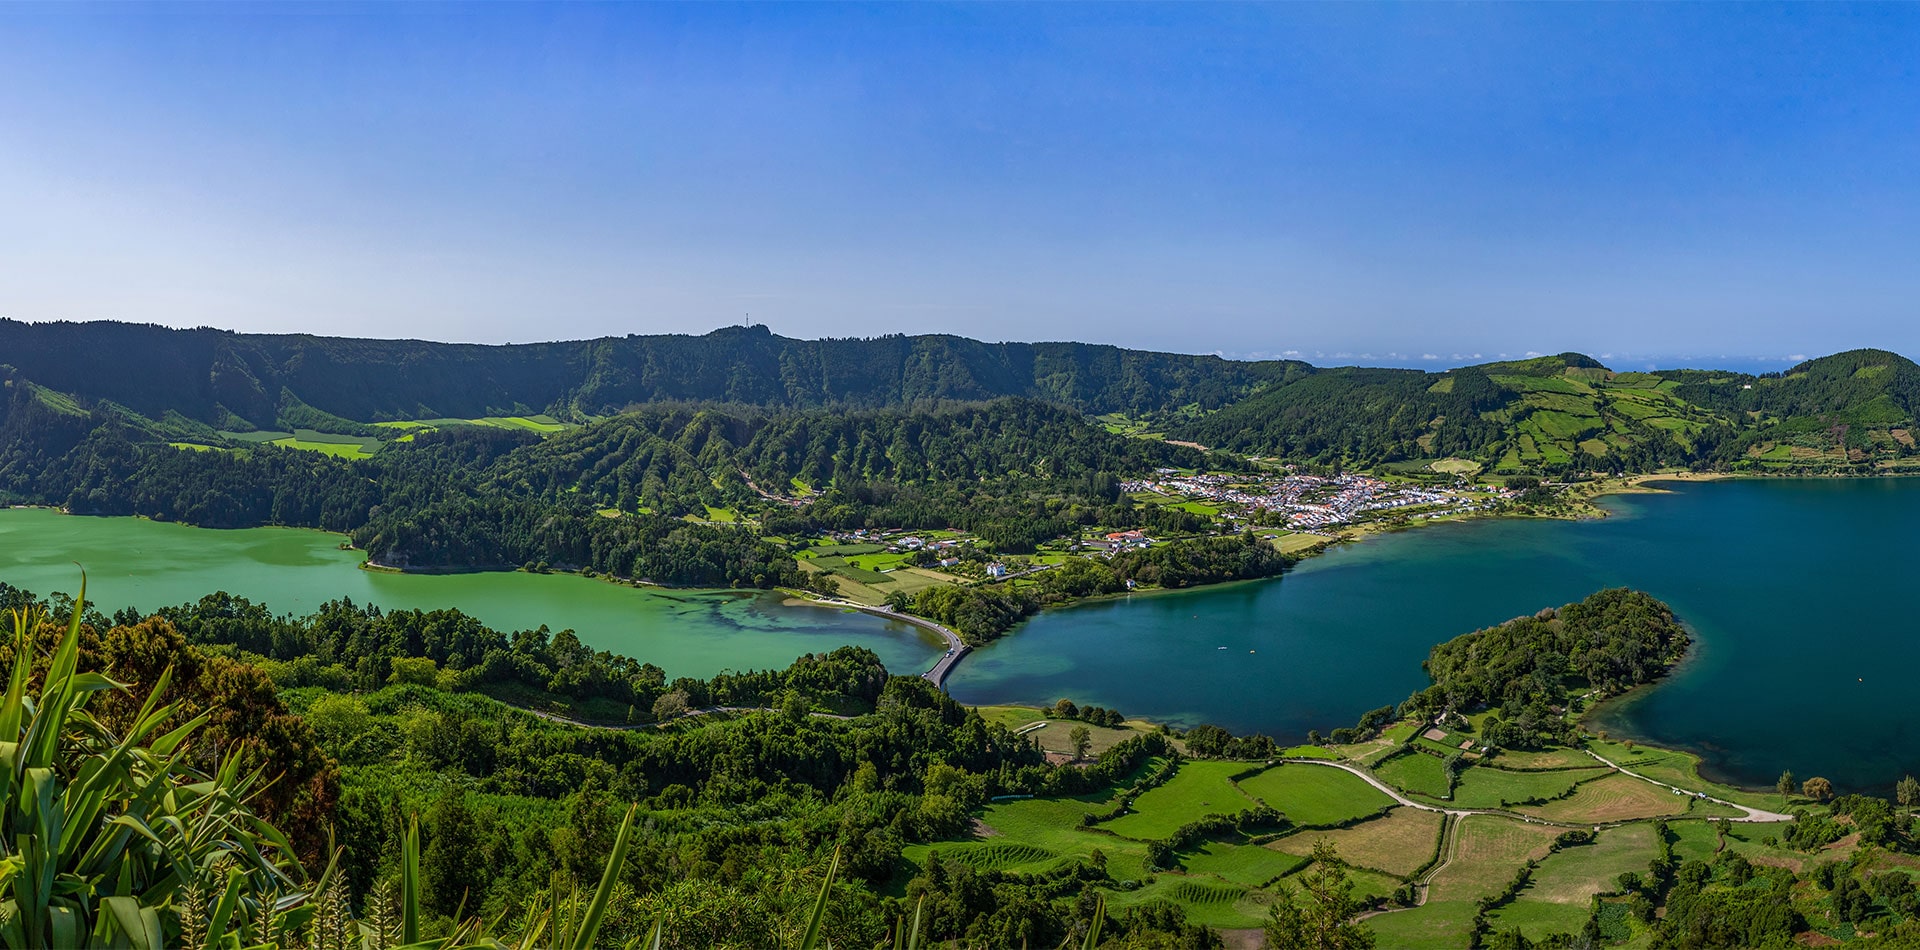 Sete Cidades Azores, Portugal